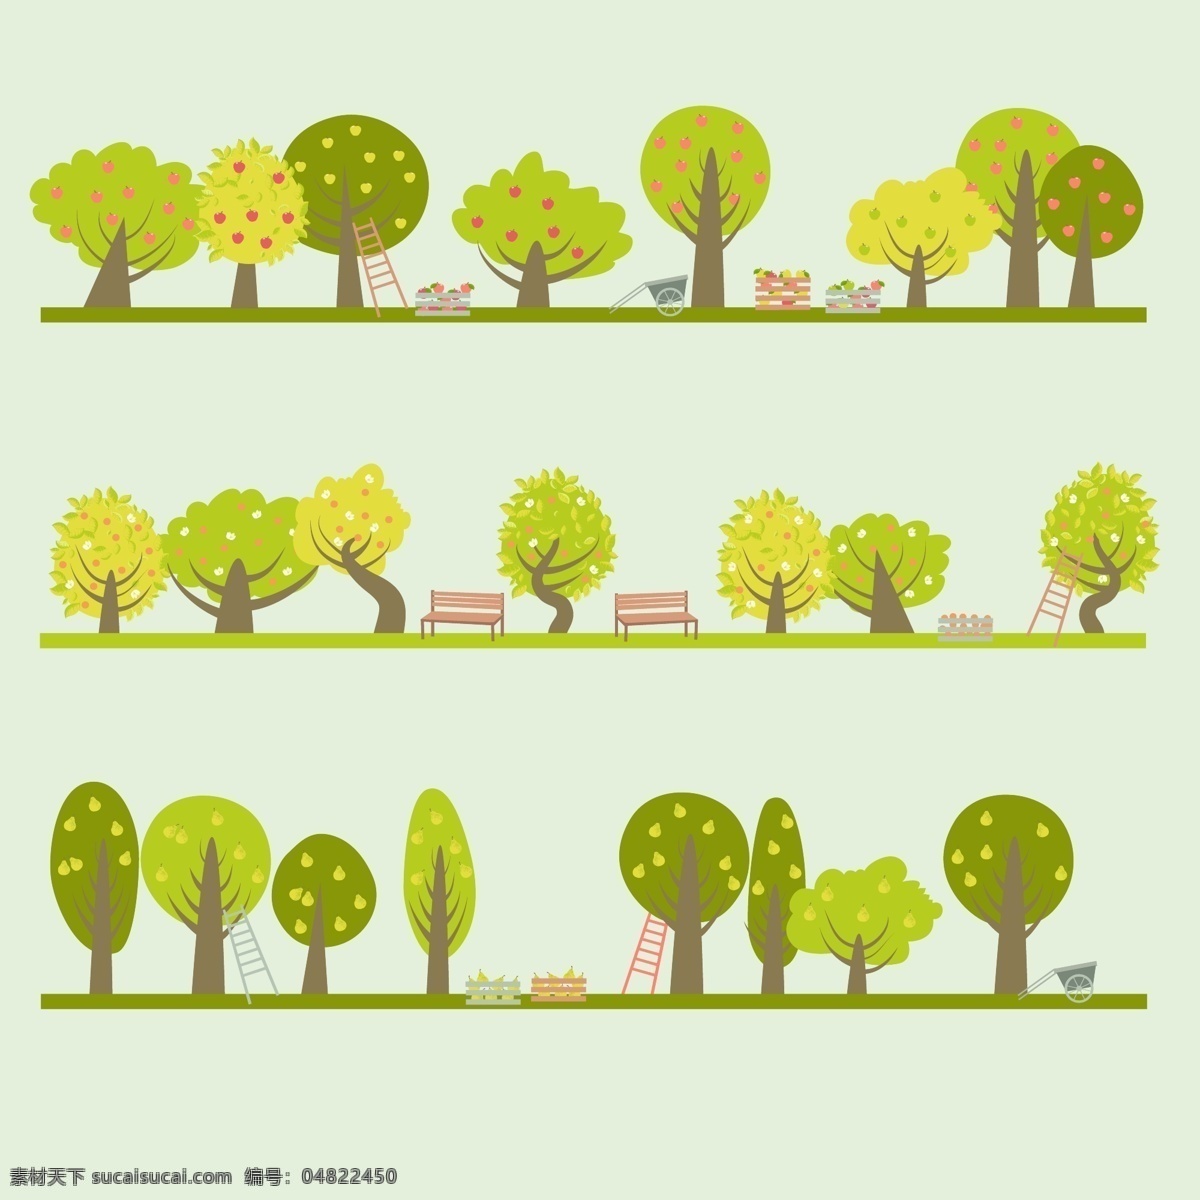 免抠 矢量素材 卡通素材 卡通 免 抠 树木 免抠树木 矢量树木